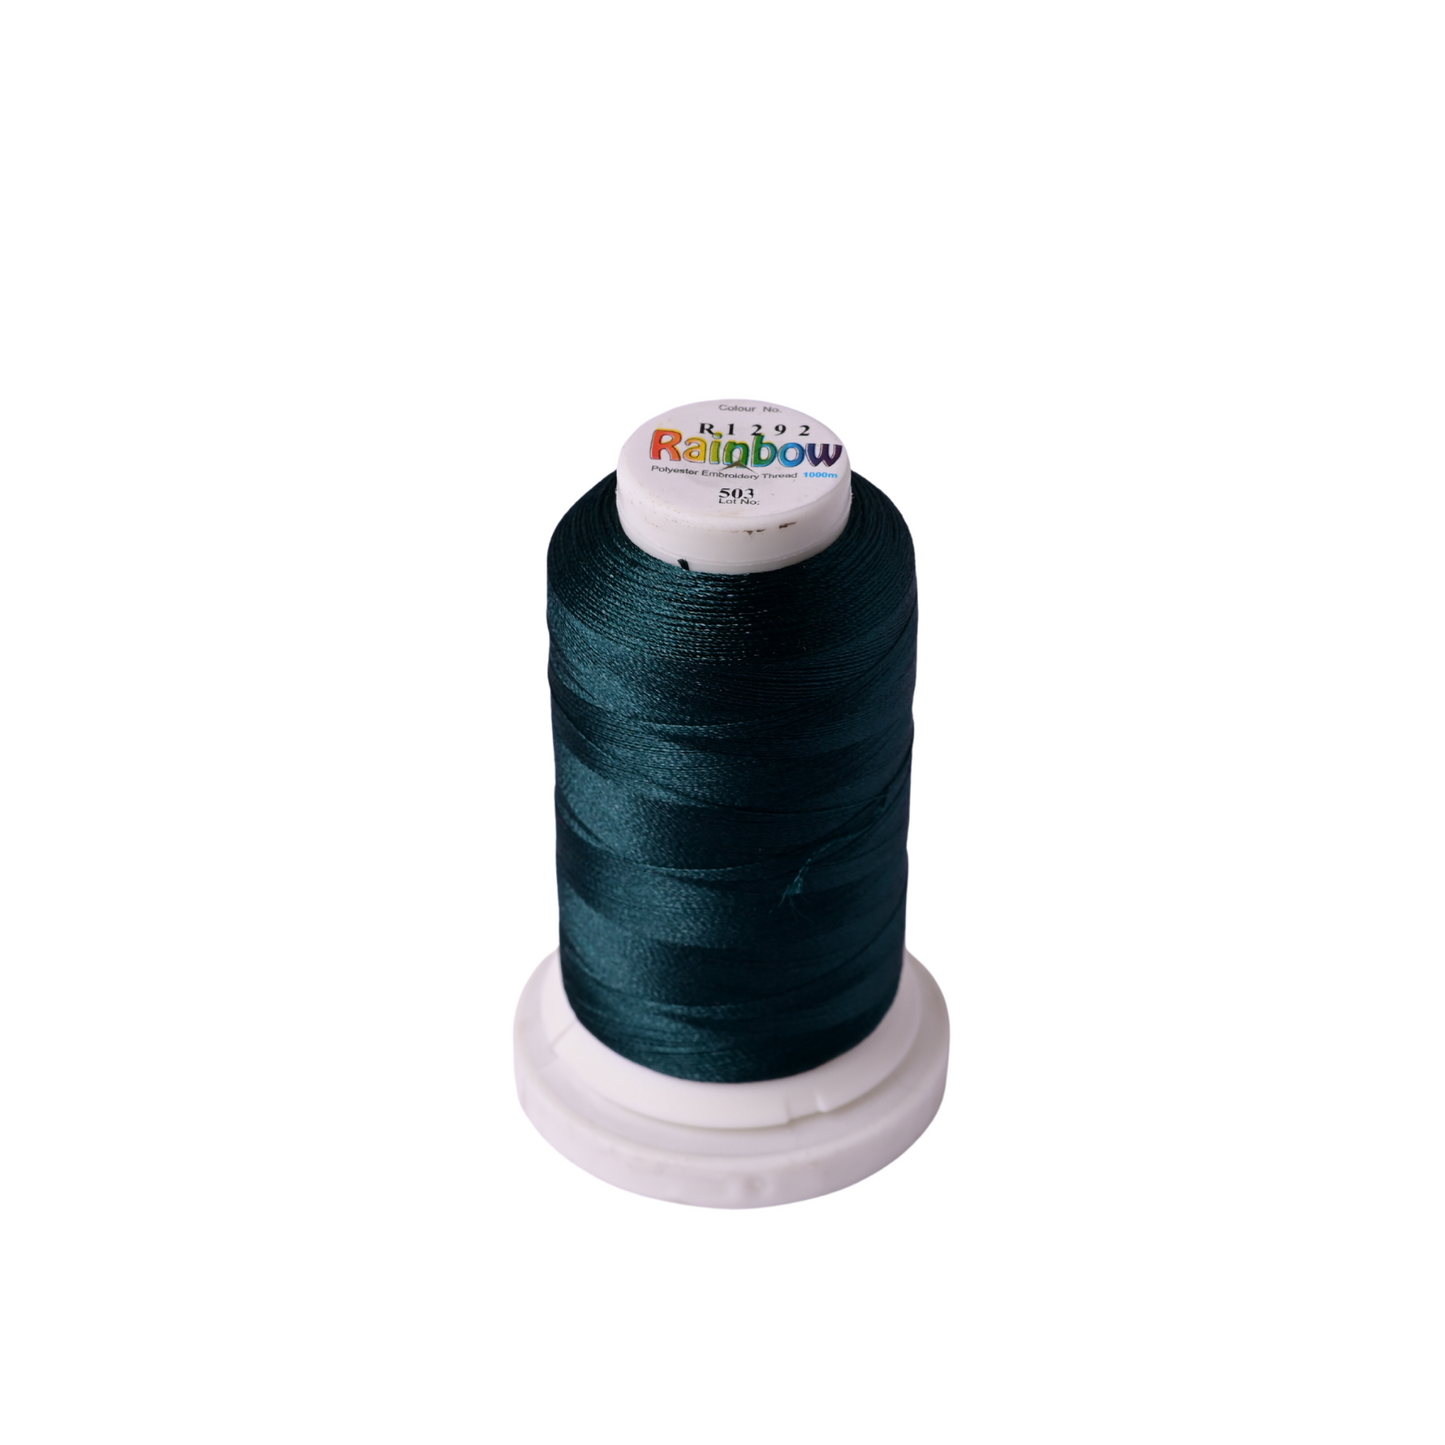 Rainbow Embroidery Thread (Column 13)